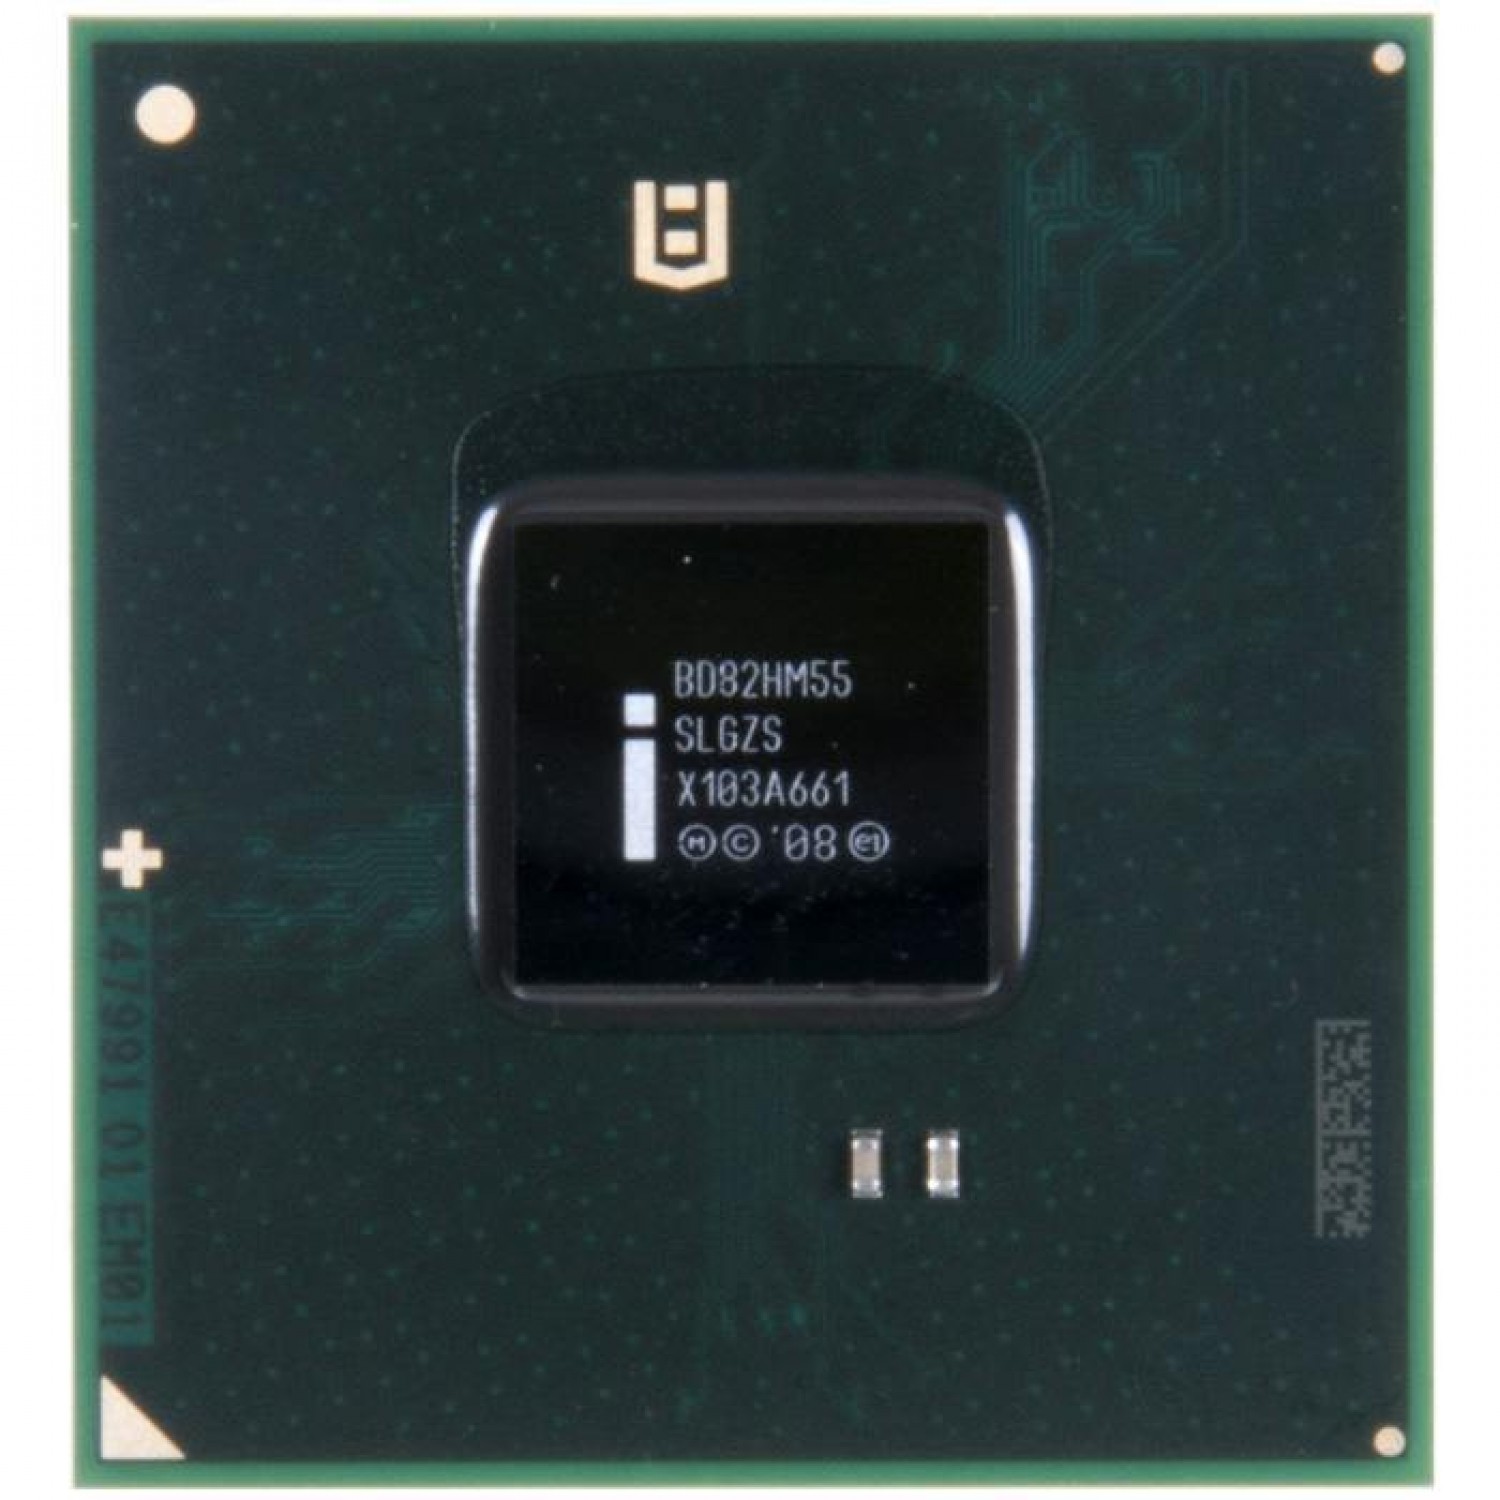   BD82HM55 Intel SLGZS